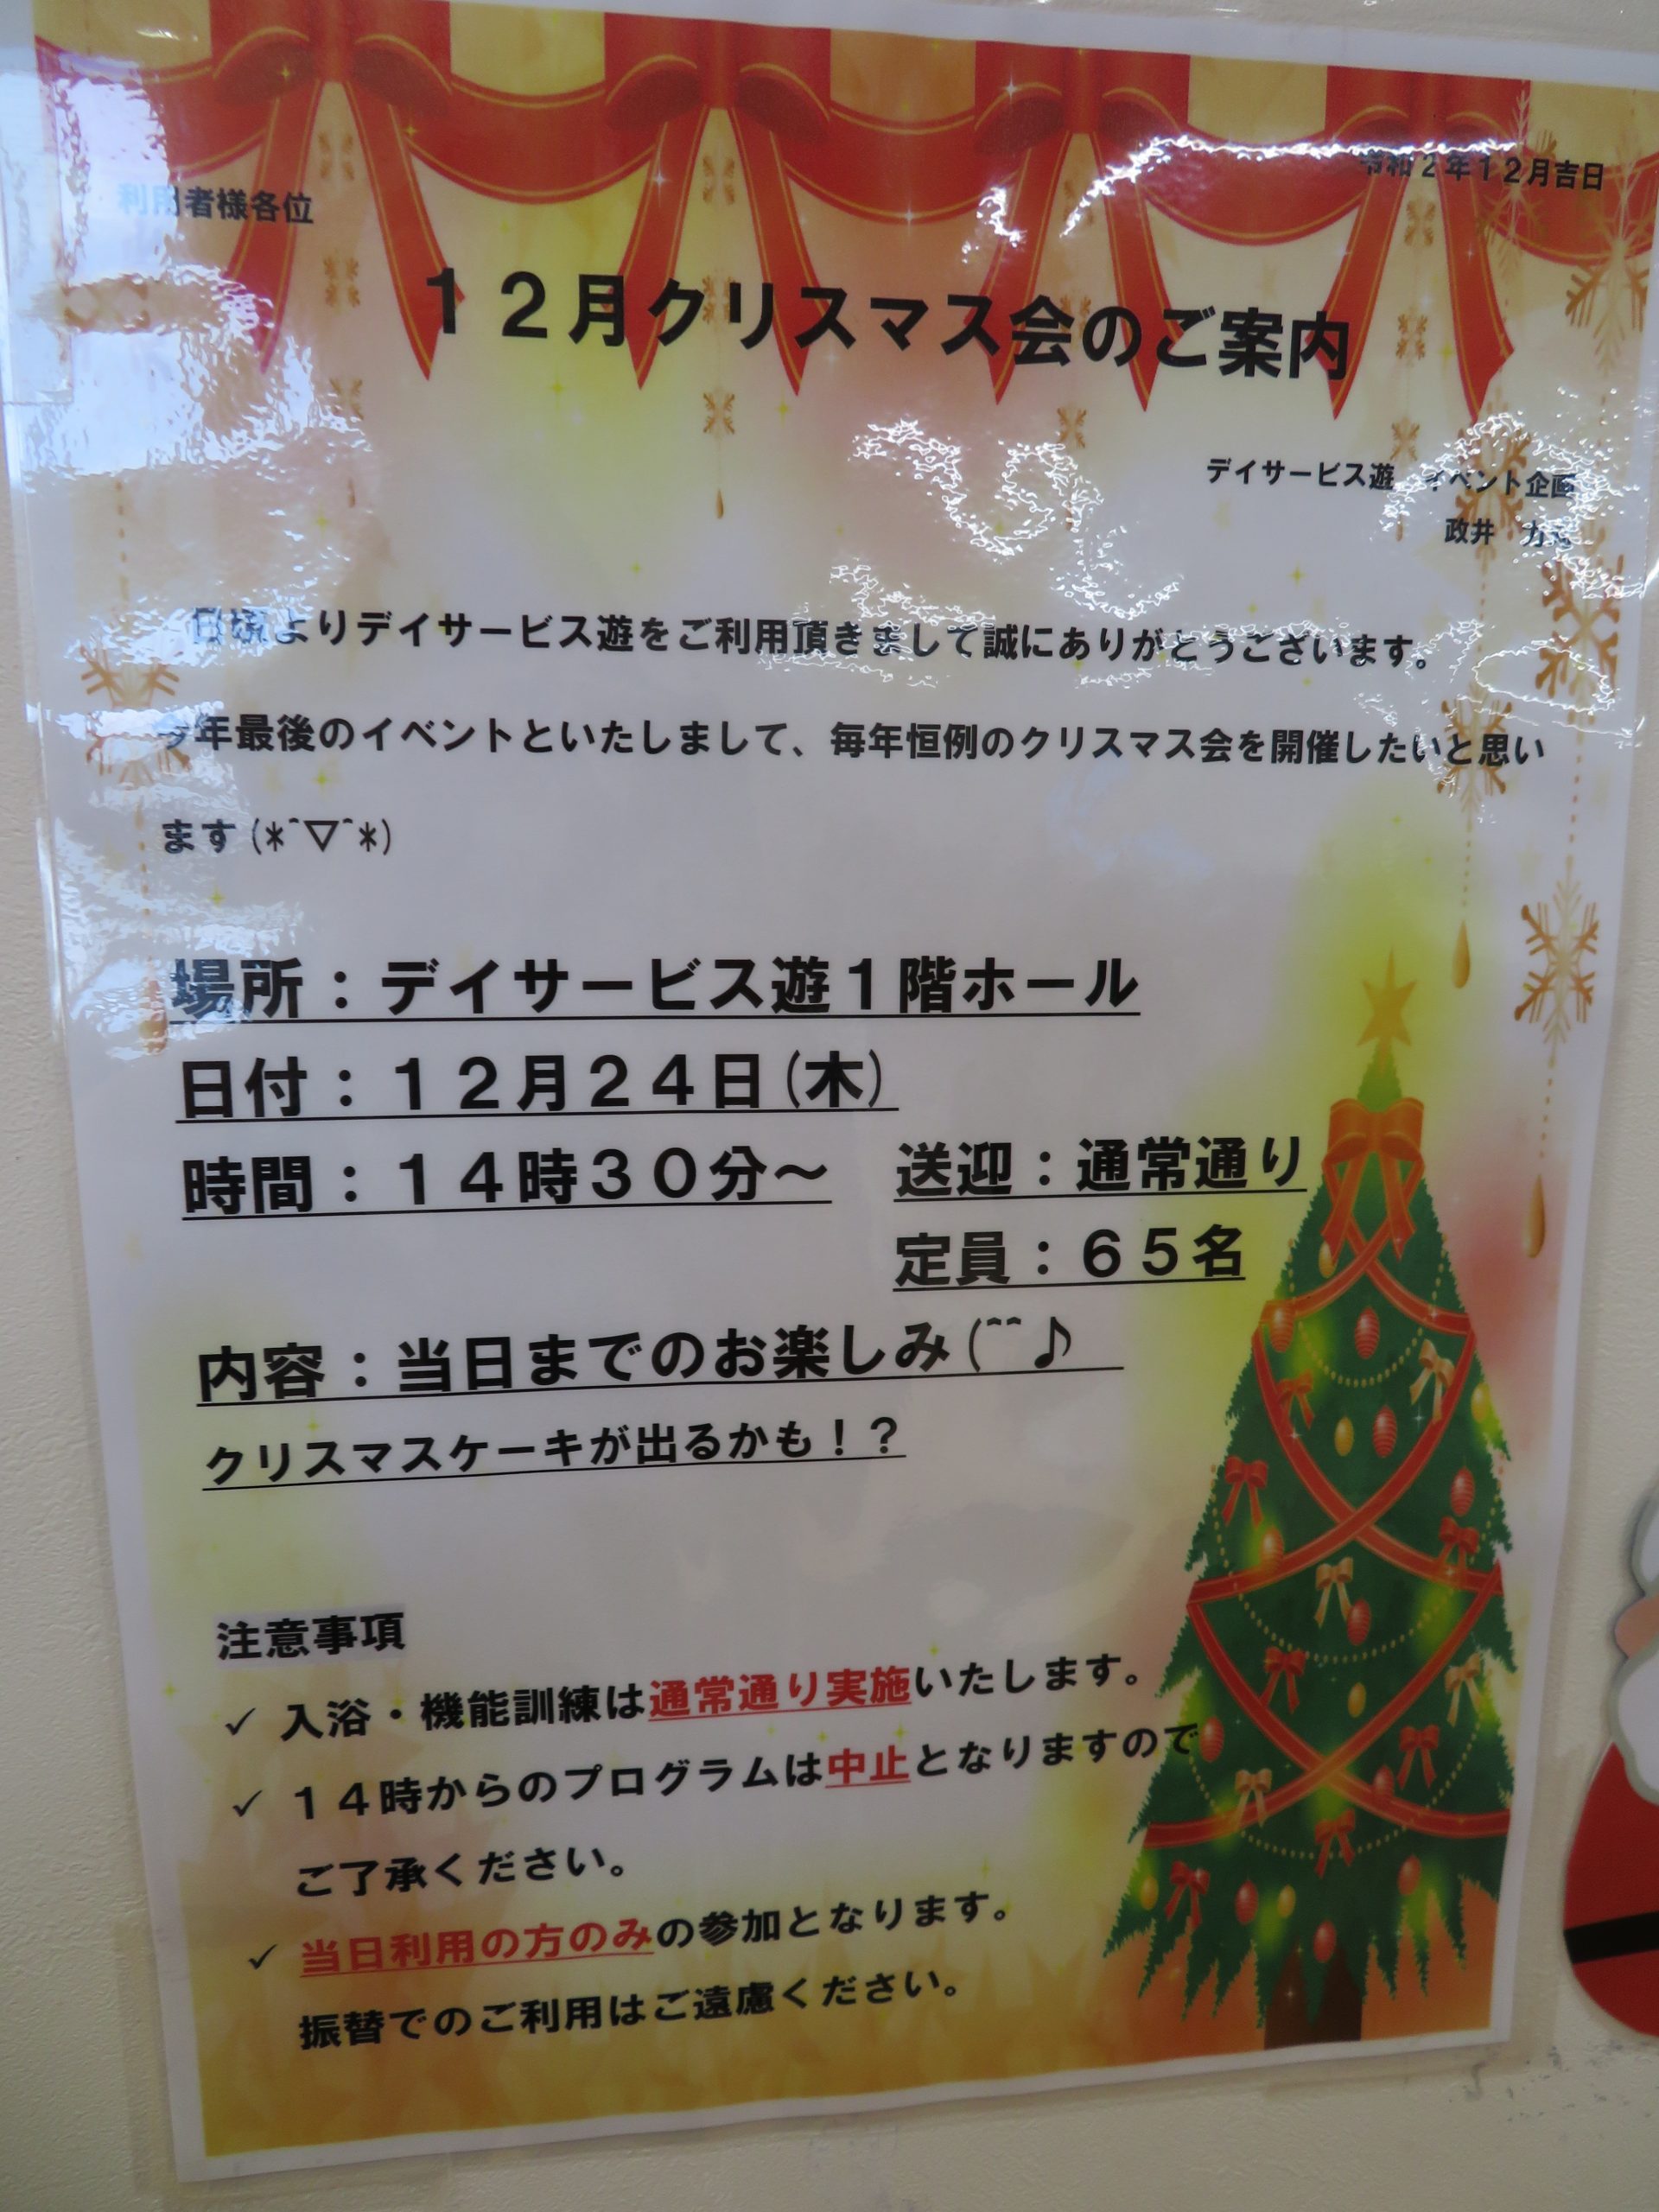 遊のホワイトクリスマス 株式会社矢島礦業所